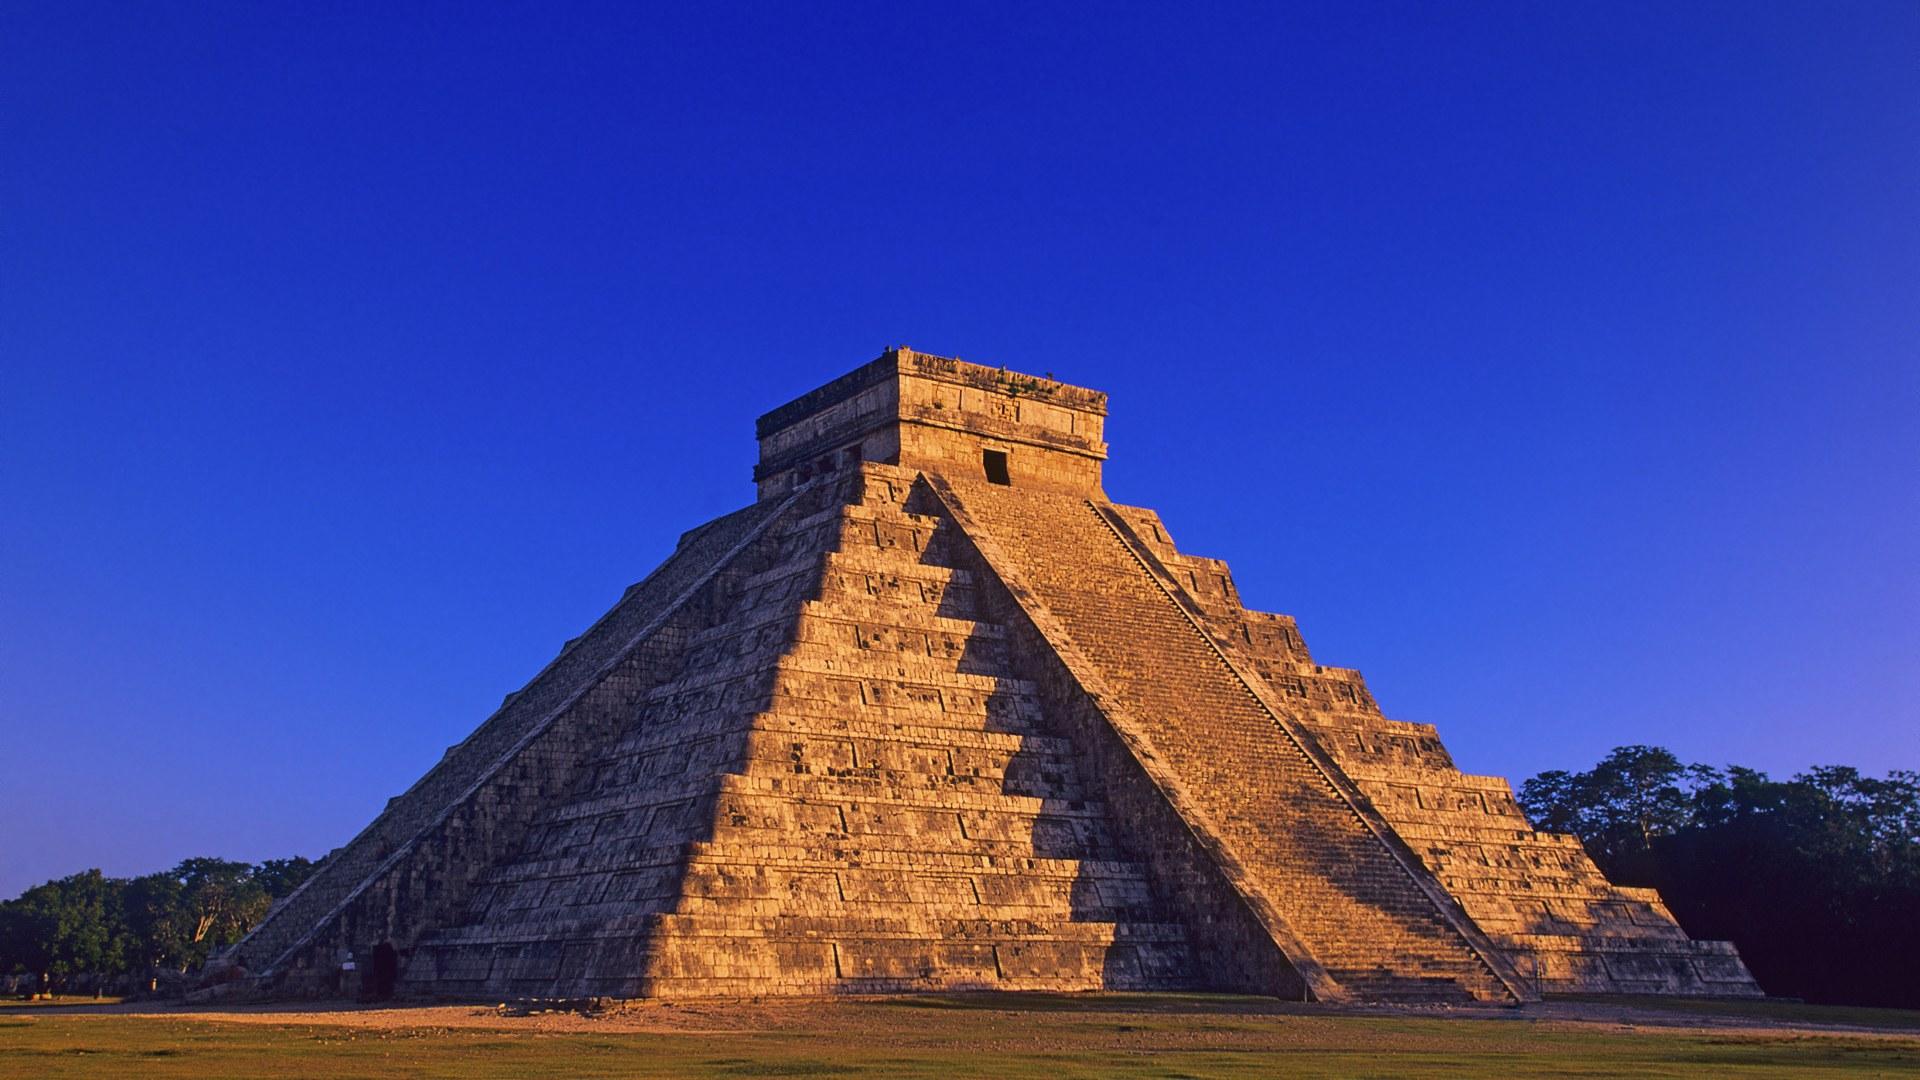 Mayan Pyramid of Kukulkan at Chichen Itza, Yucatan Peninsula, Mexico